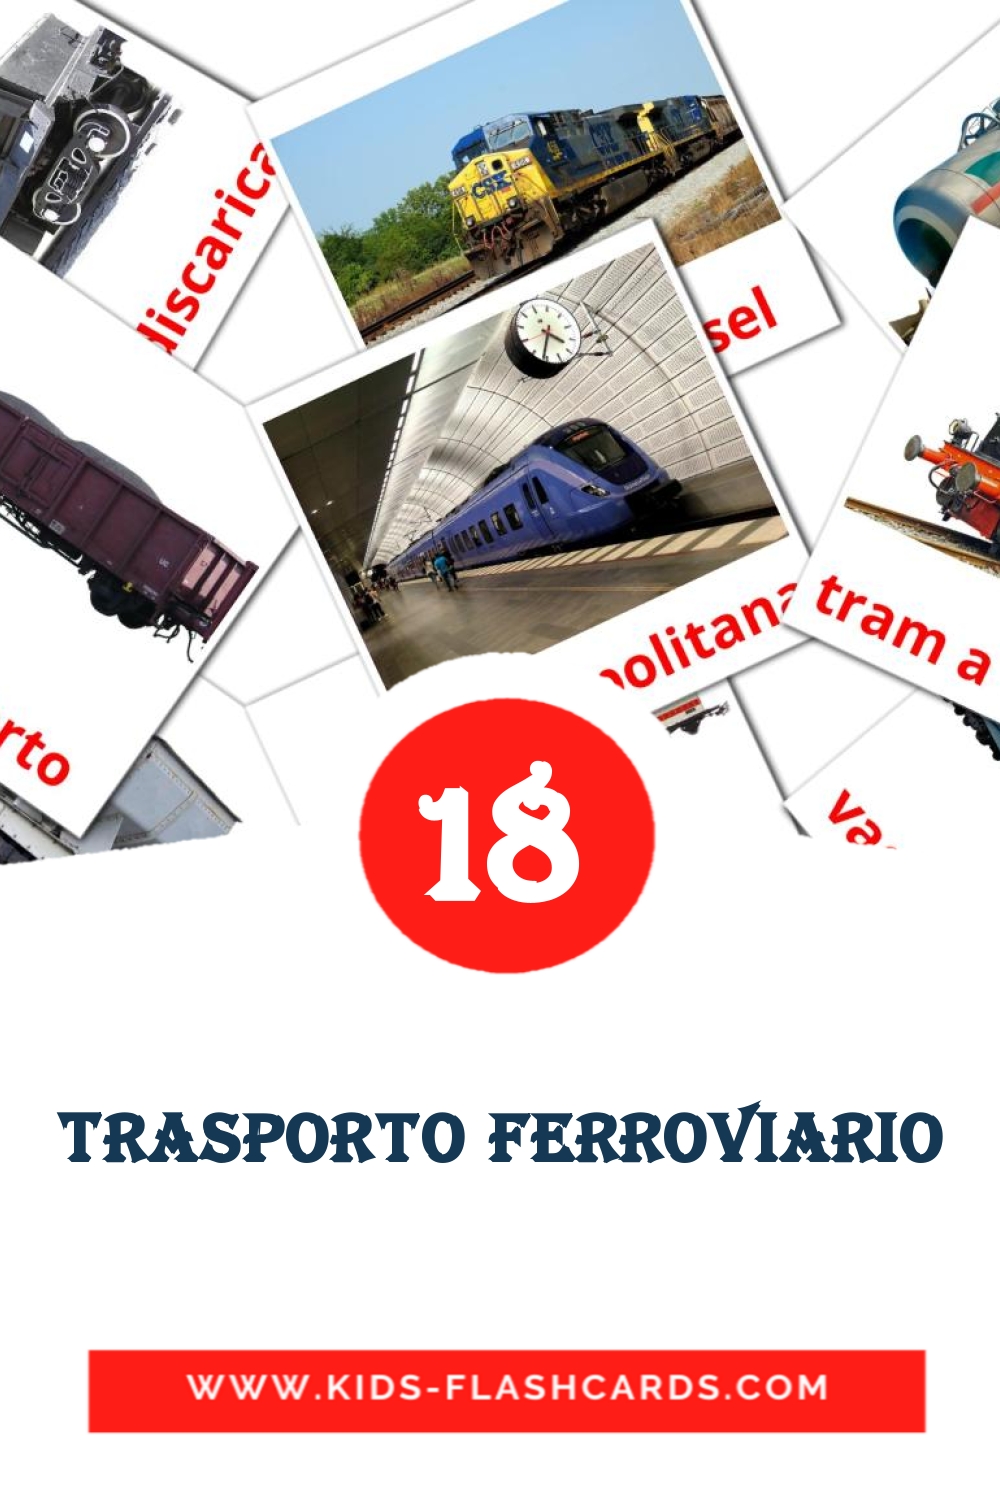 18 Trasporto ferroviario Bildkarten für den Kindergarten auf Italienisch